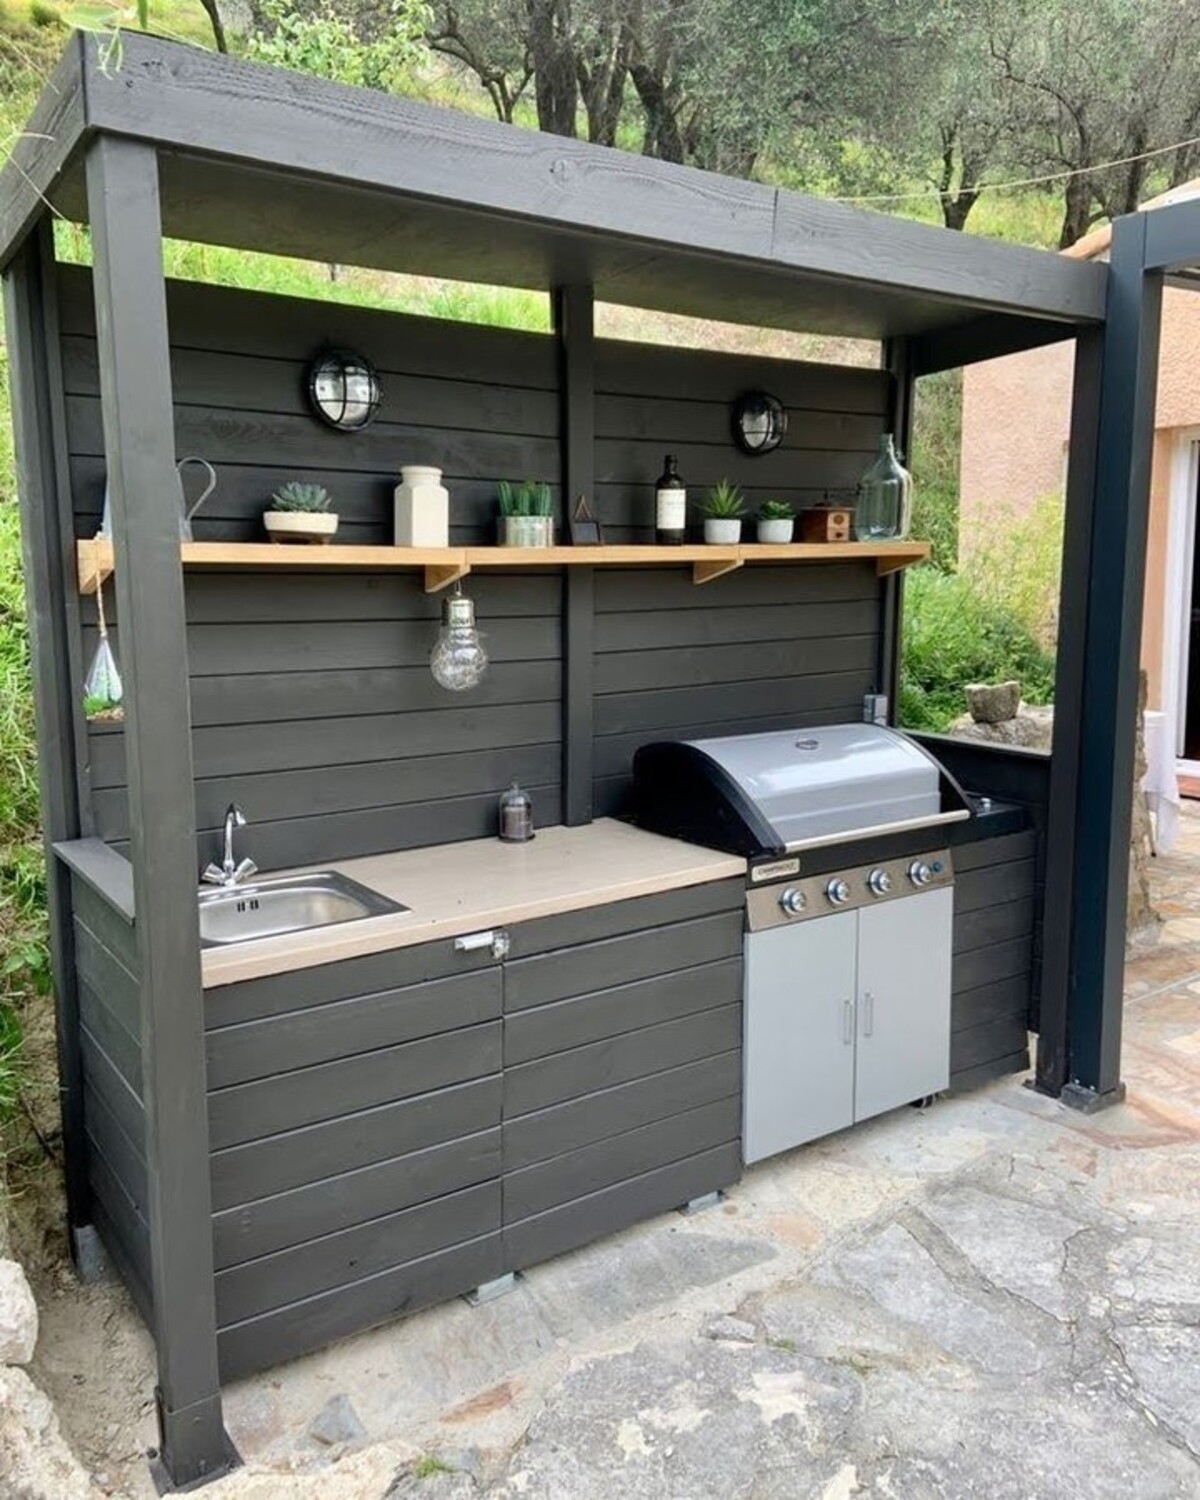 17 patio kitchen ideas outdoor 15